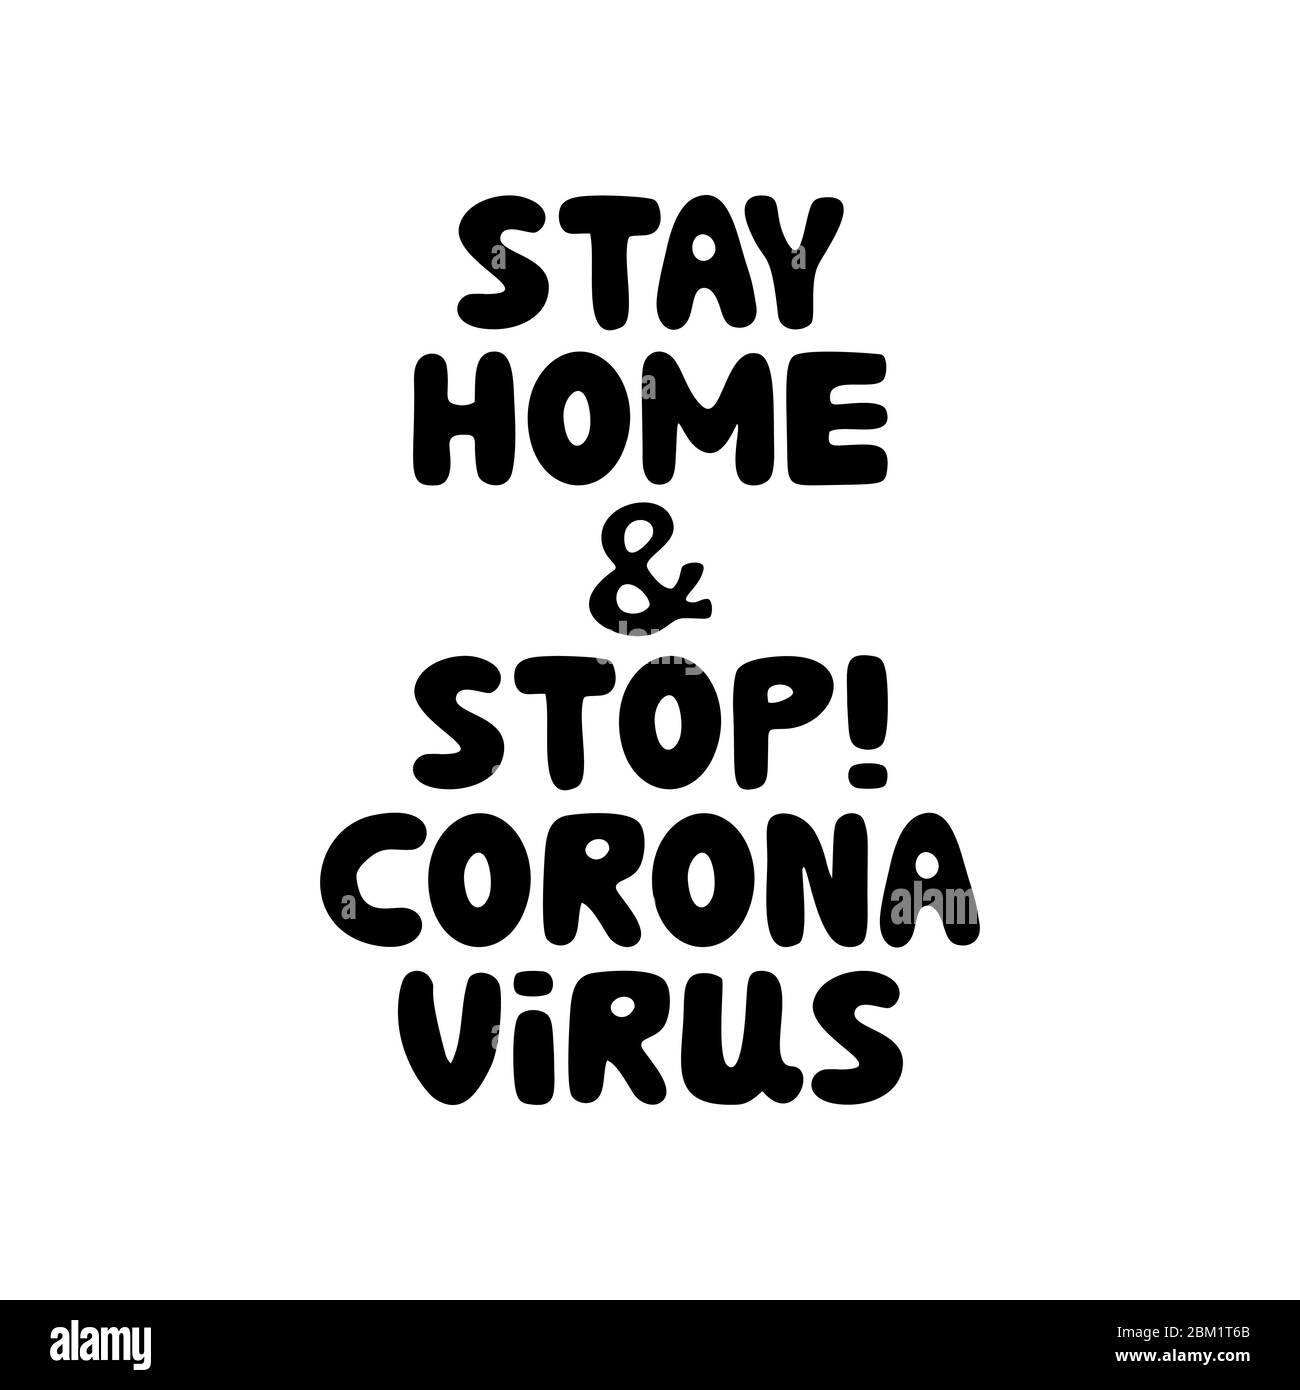 Permanezca en casa y detenga el coronavirus. Letras de burbujas de fideos dibujadas a mano. Aislado sobre fondo blanco. Ilustración de stock vectorial. Ilustración del Vector